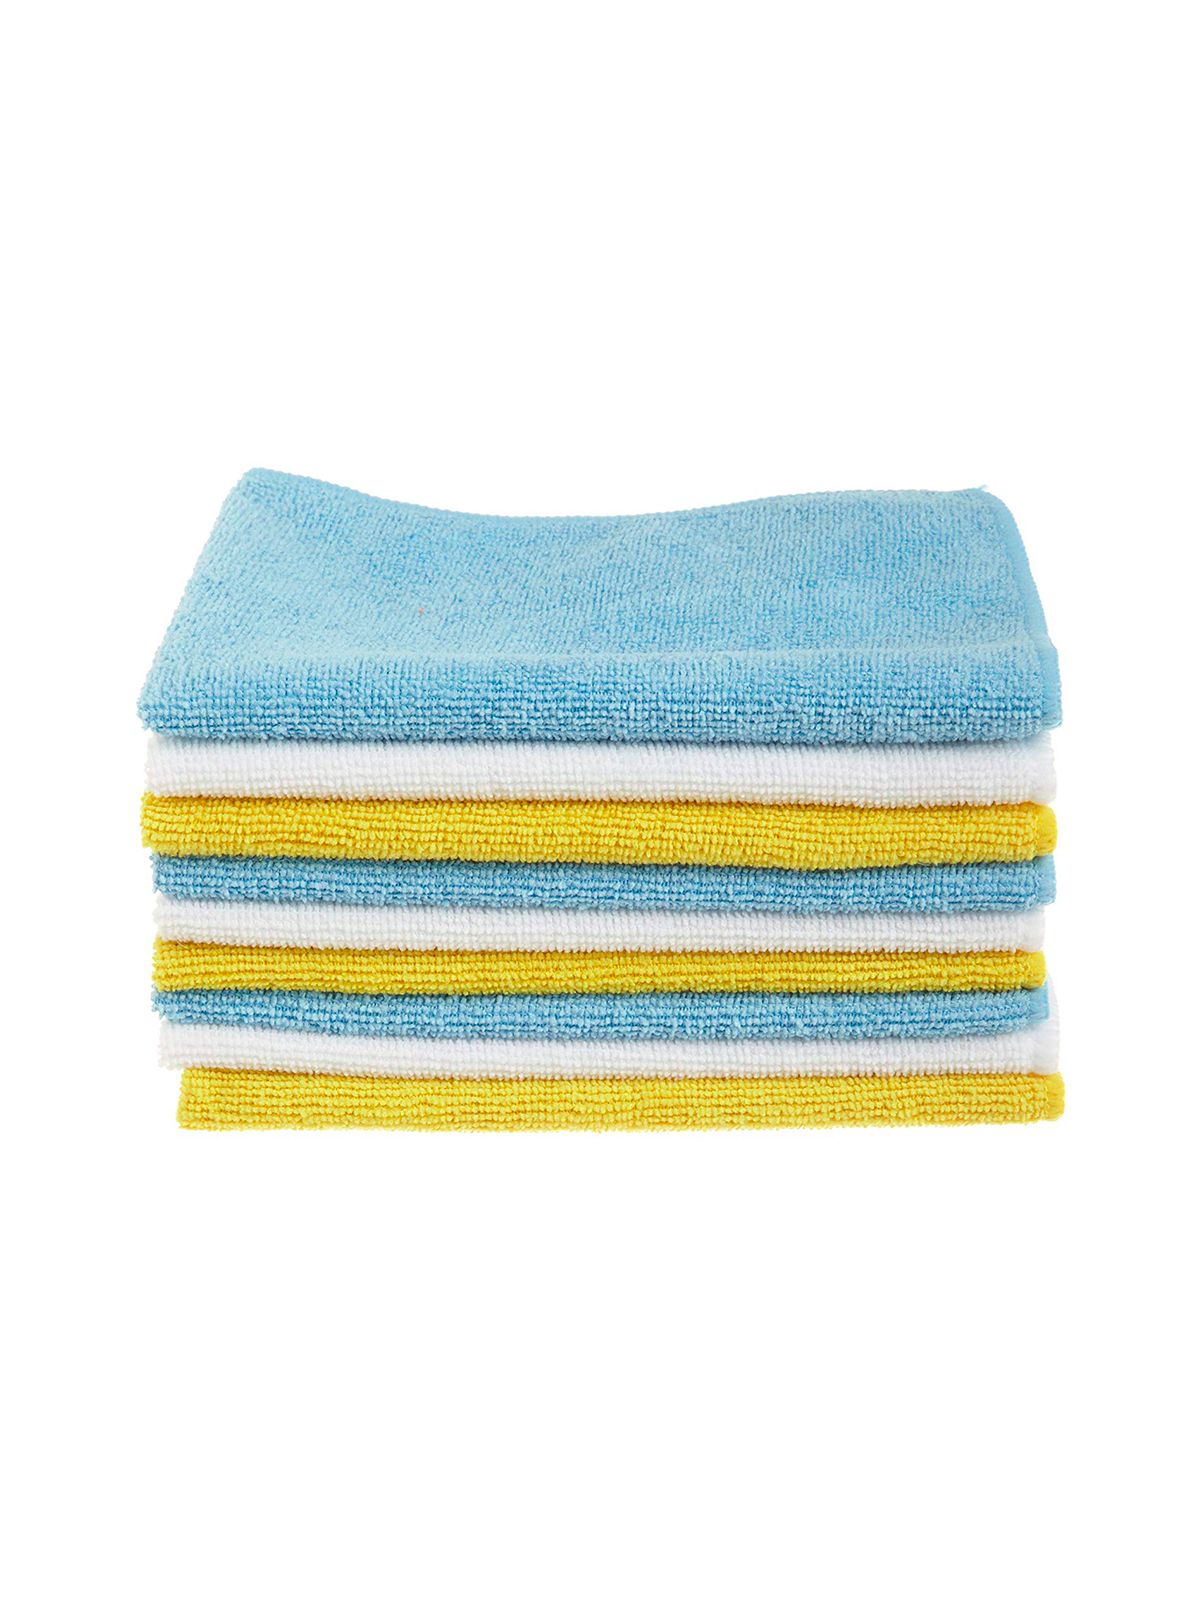 ผ้าเช็ดทำความสะอาดไมโครไฟเบอร์สีน้ำเงินและสีเหลือง